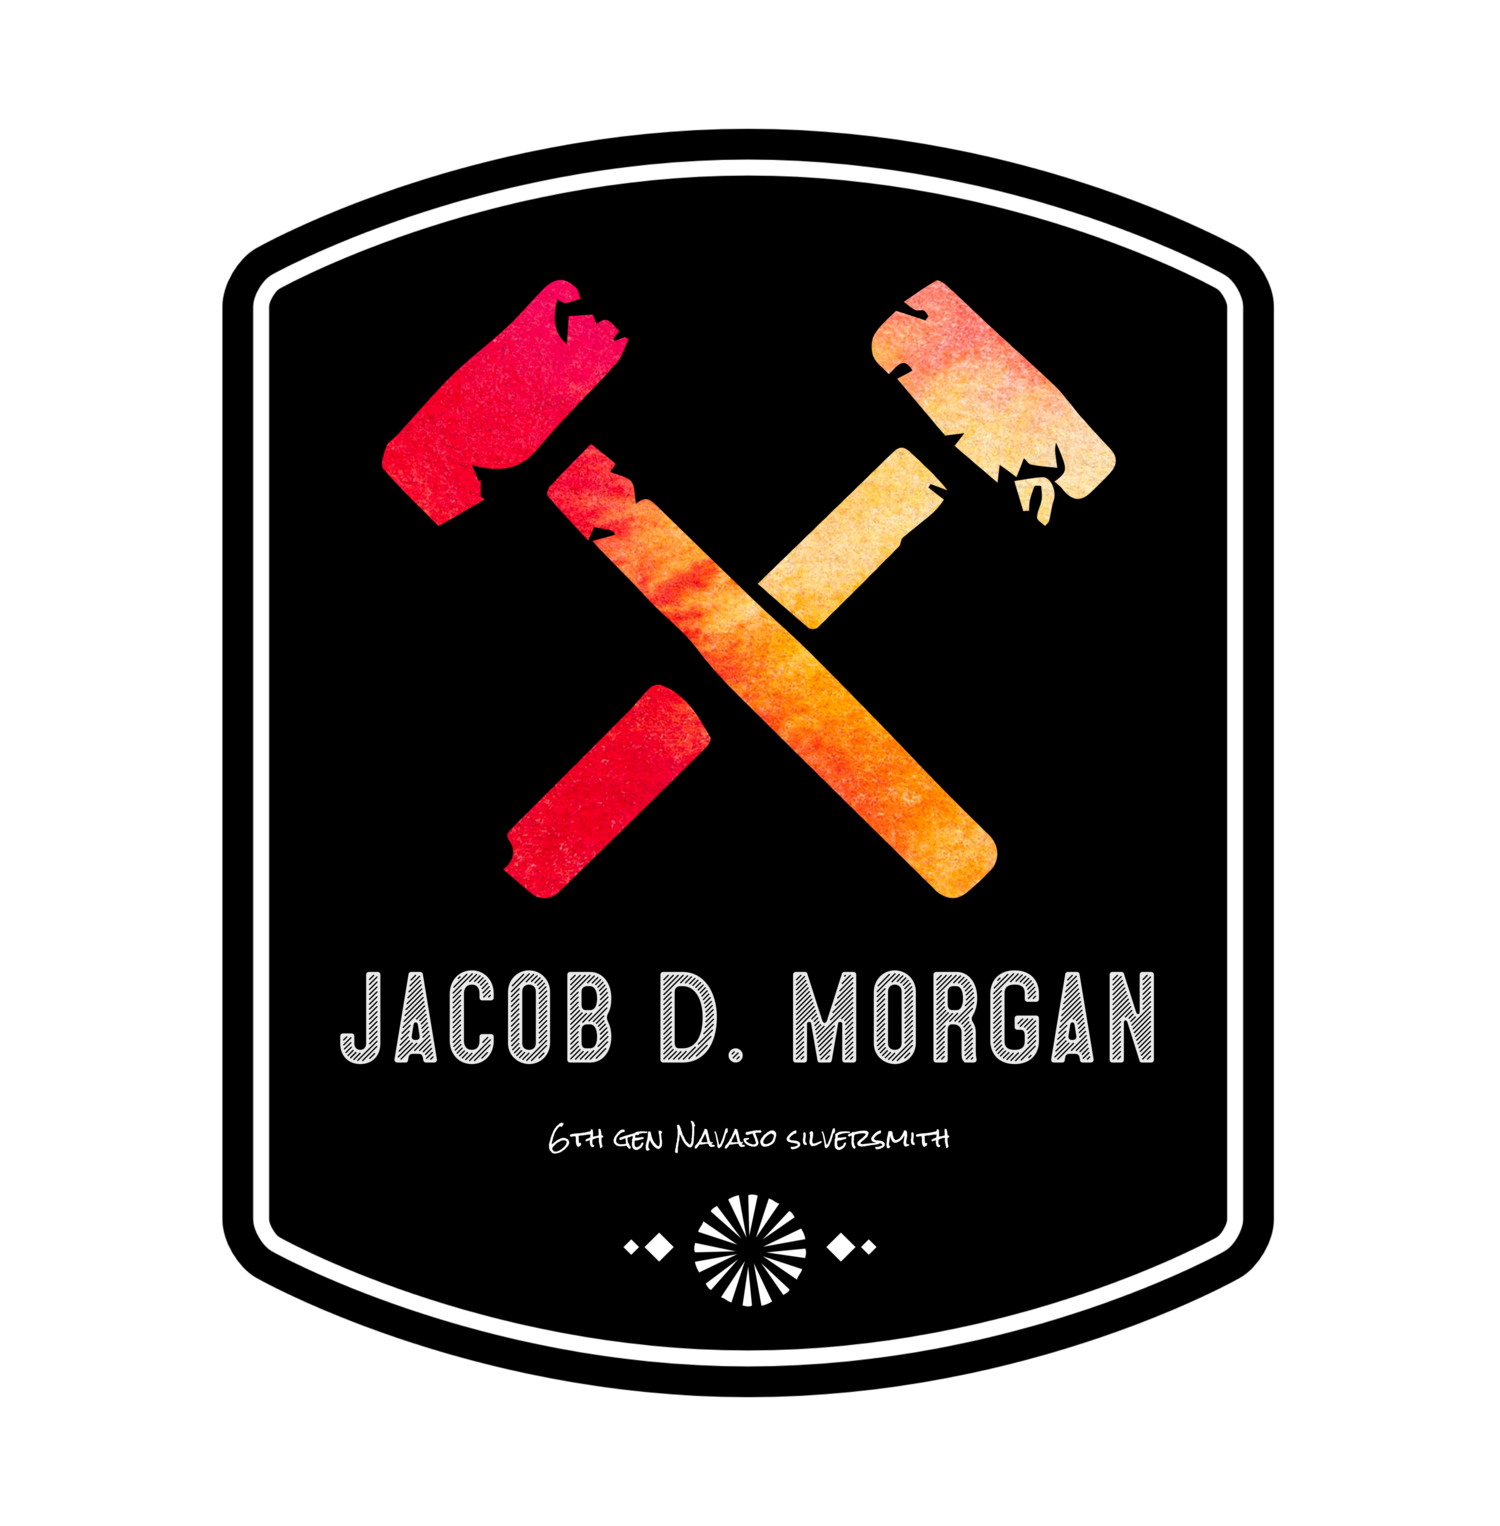 Jacob D. Morgan